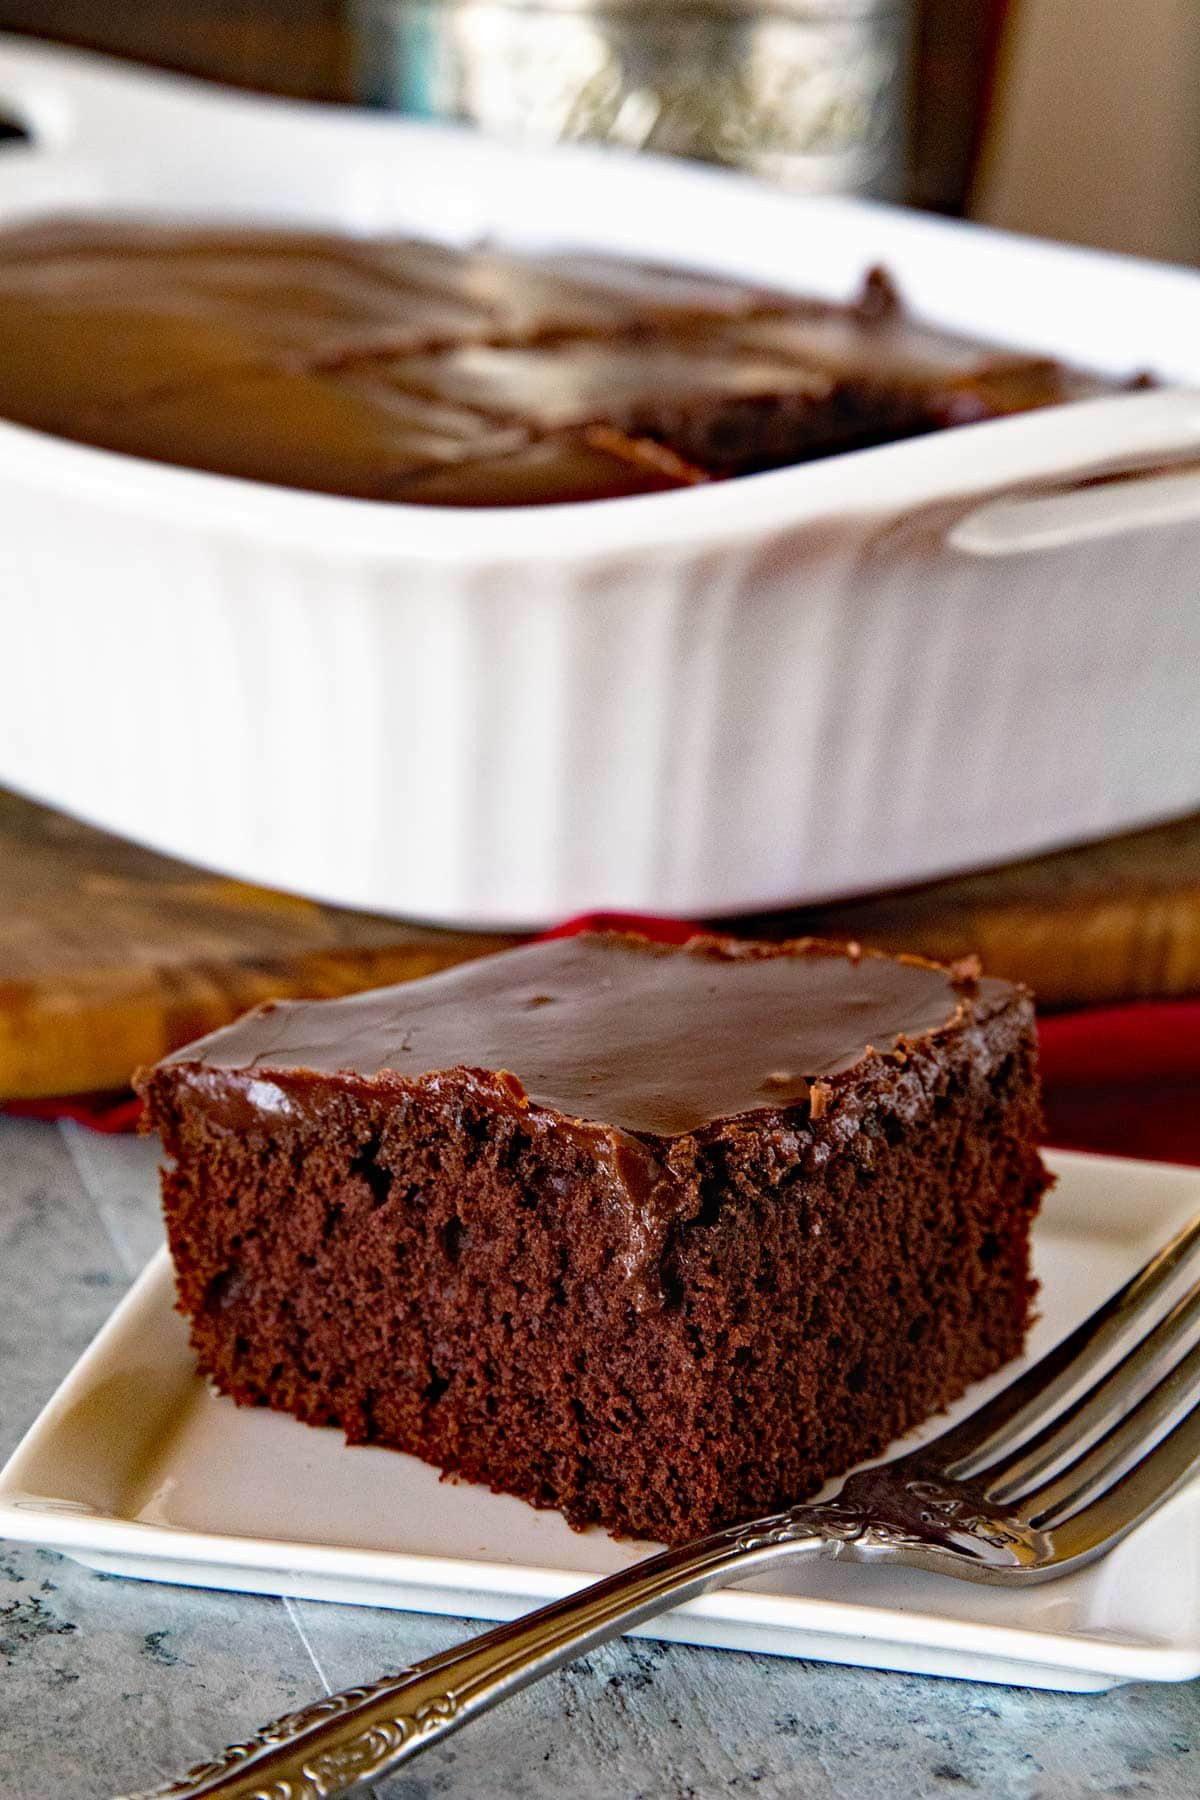 Homemade Chocolate Cake Recipes Fresh Homemade Chocolate Cake with Chocolate Frosting Julie S